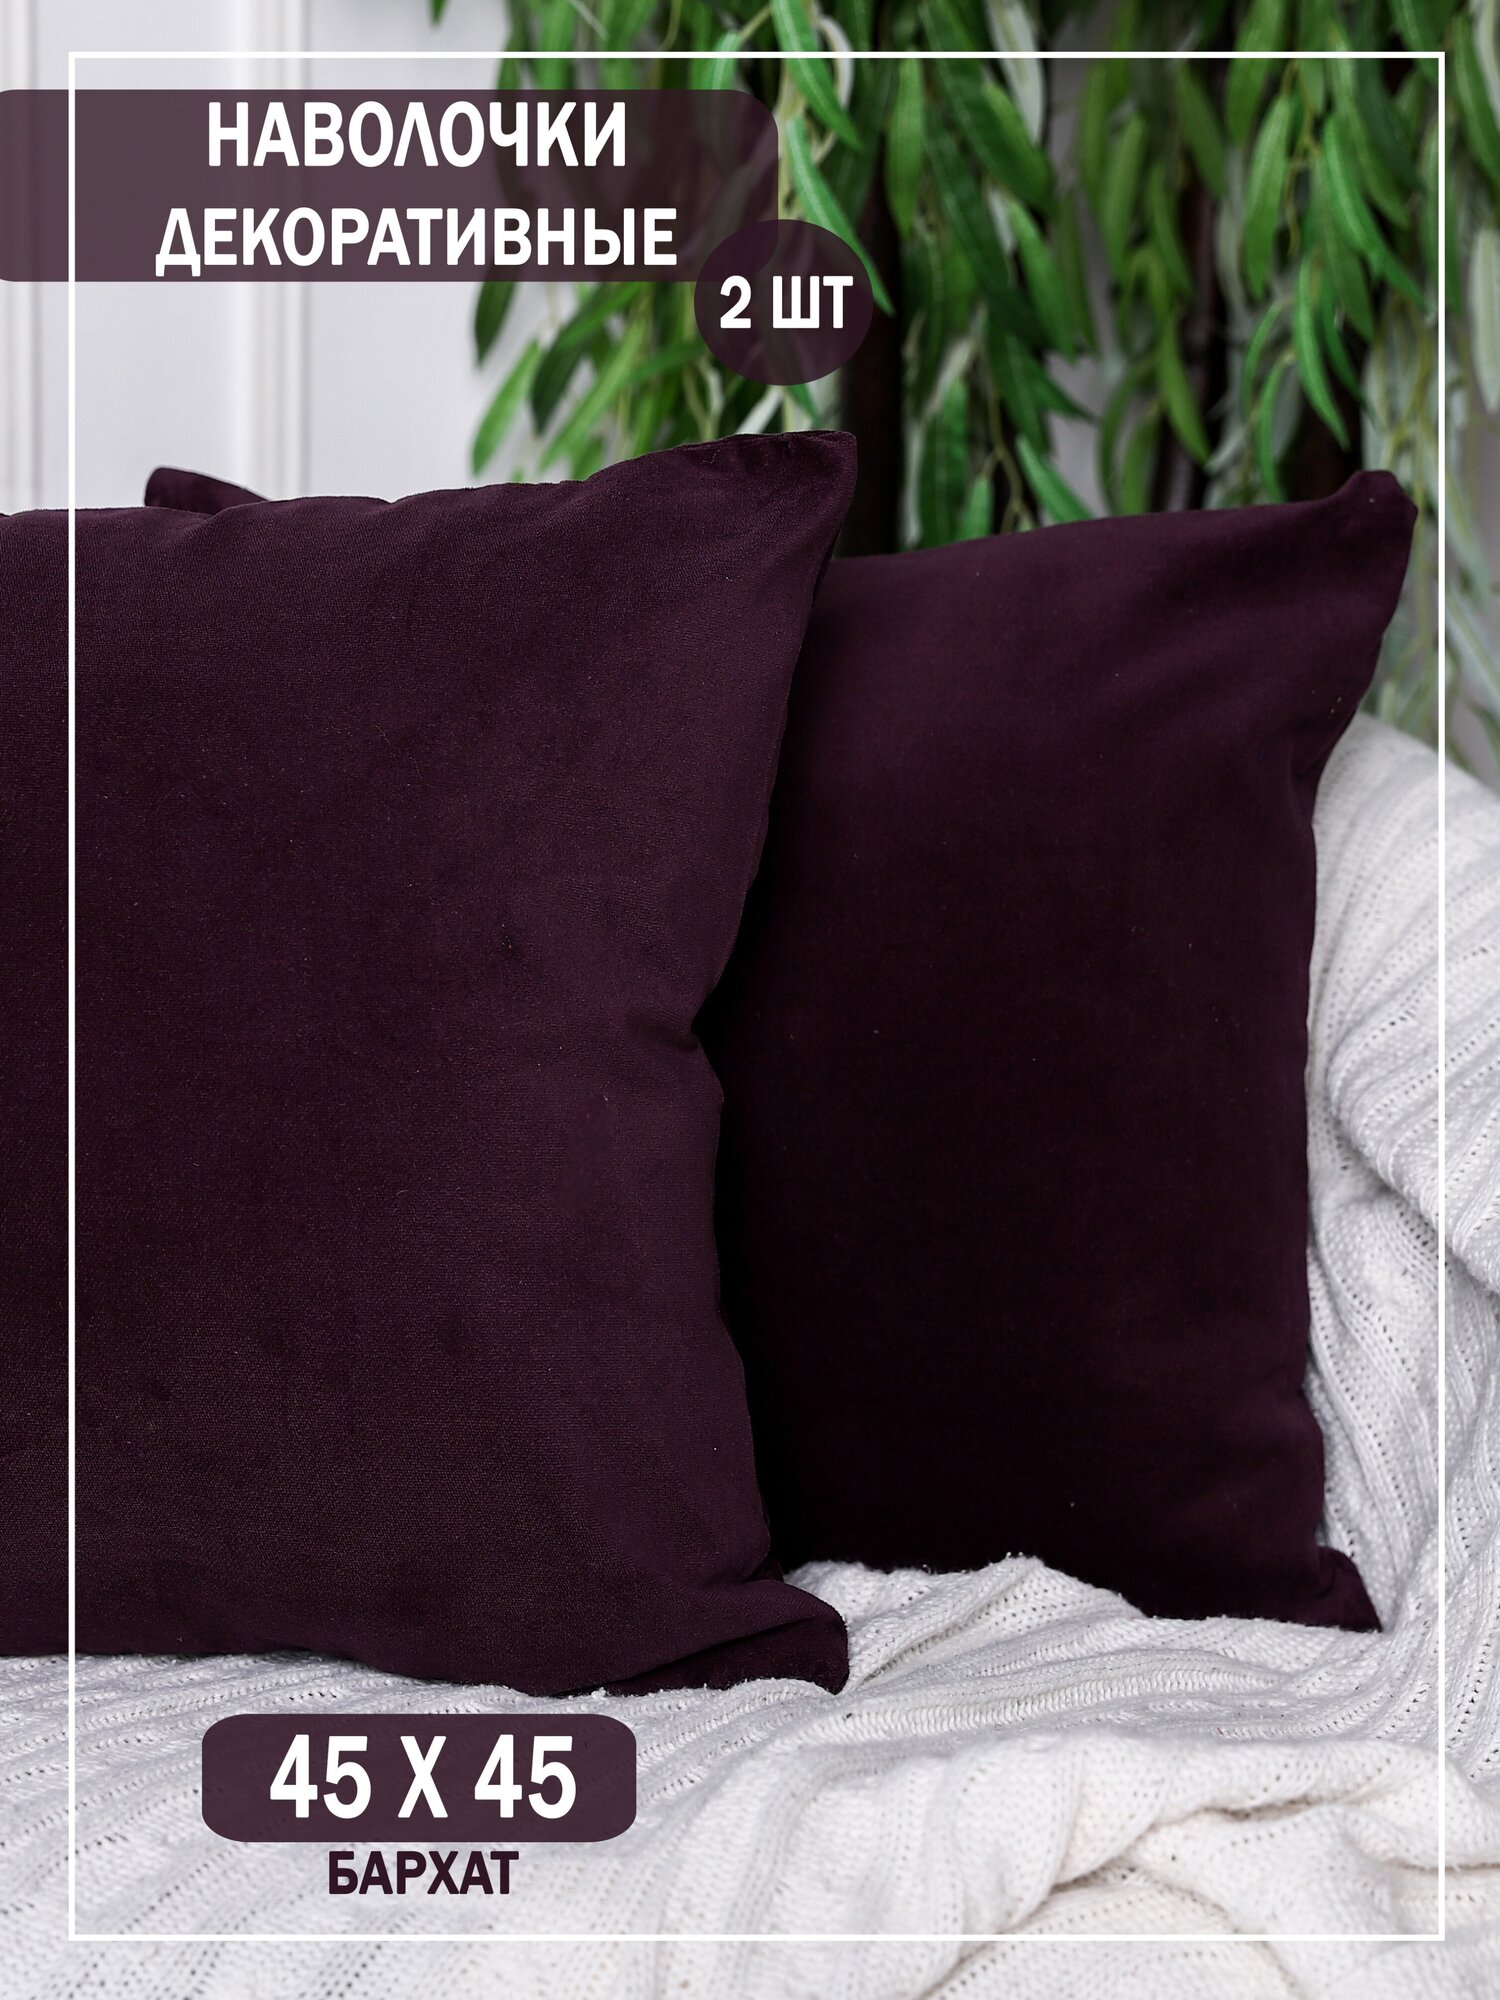 Наволочки декоративные на подушки 45х45 / цвет фиолетово-баклажанный/ интерьер для дома / 2 штуки в комплекте